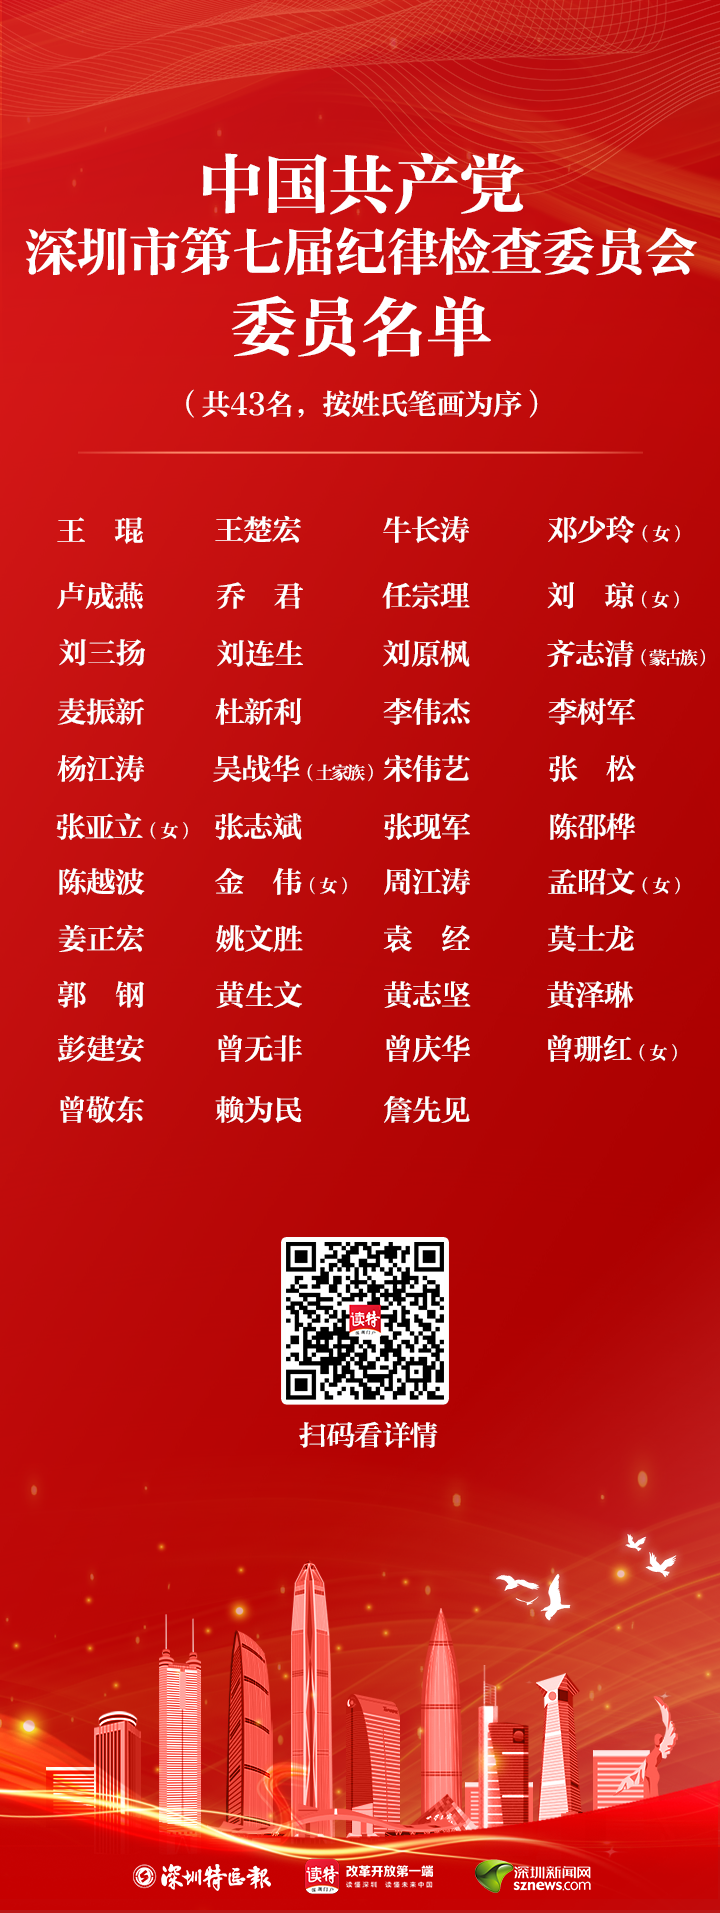 中国共产党深圳市第七届纪律检查委员会委员名单